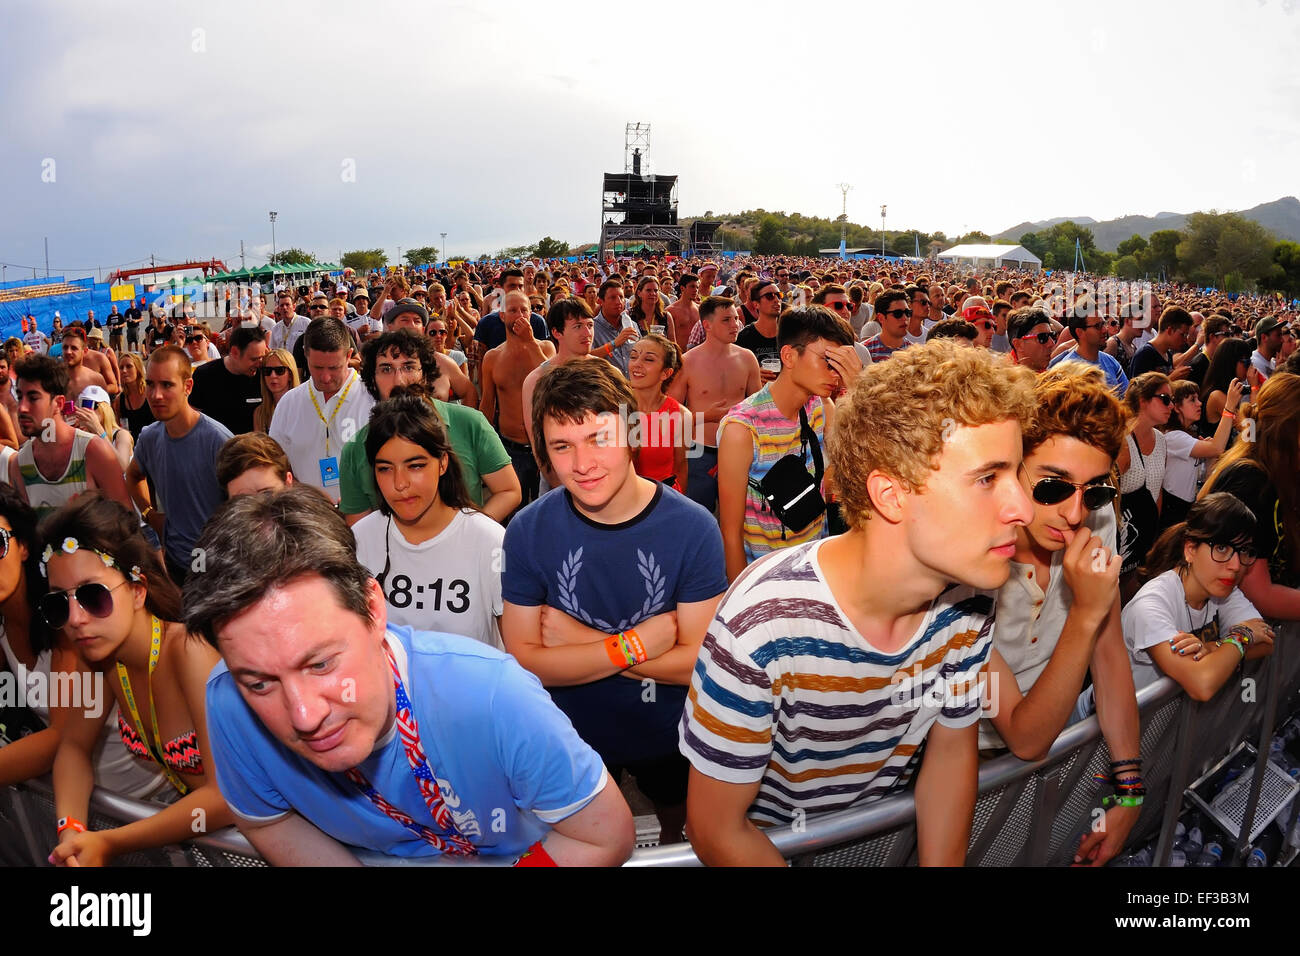 BENICASSIM, España - 19 de julio: Gente de la audiencia en un concierto en el FIB Festival en julio 19, 2014 en Benicassim, España. Foto de stock